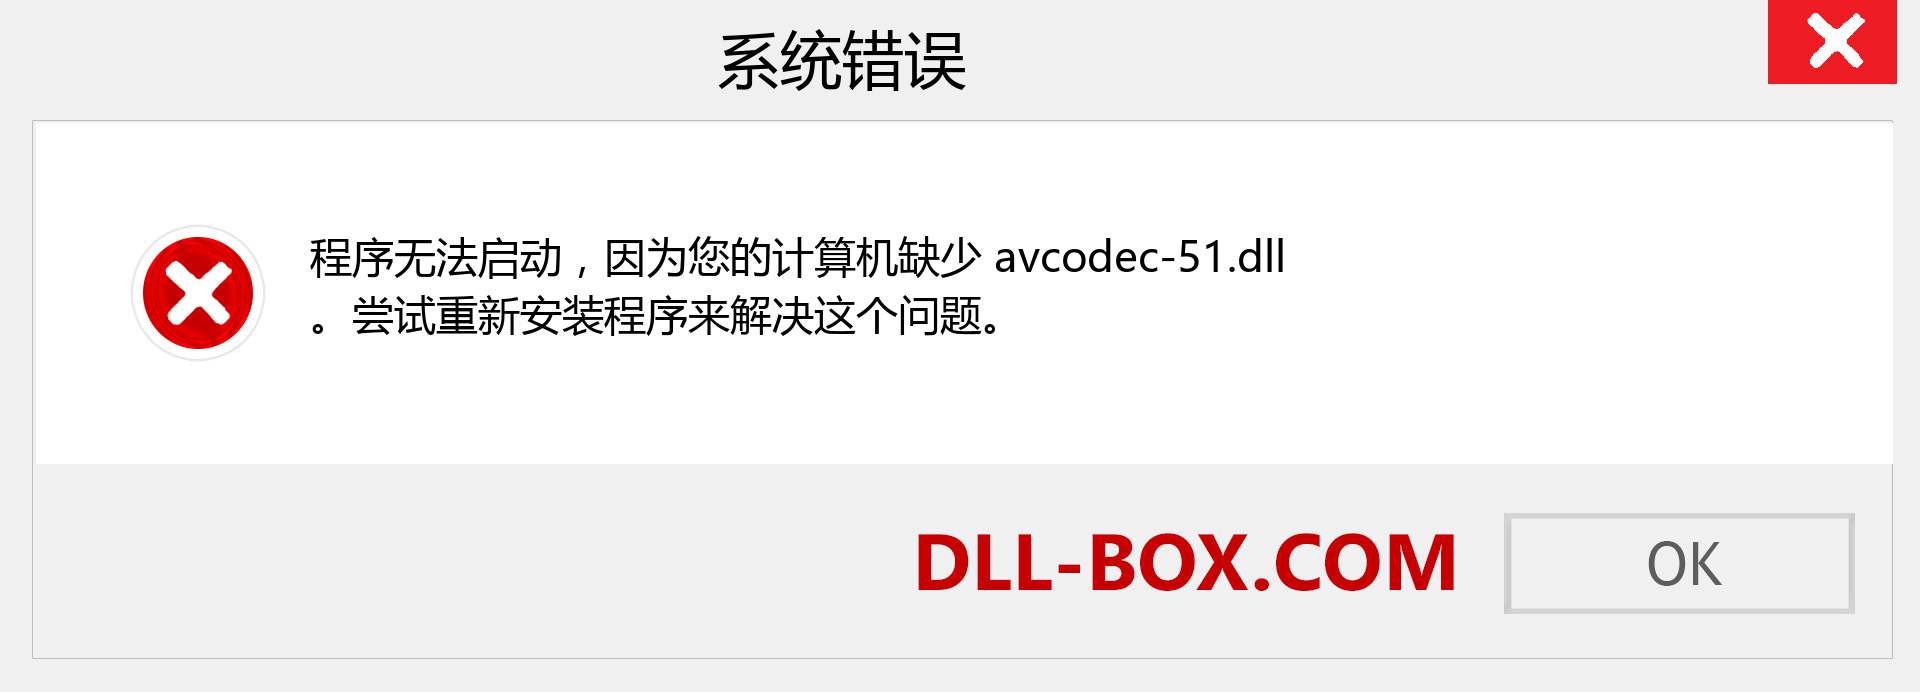 avcodec-51.dll 文件丢失？。 适用于 Windows 7、8、10 的下载 - 修复 Windows、照片、图像上的 avcodec-51 dll 丢失错误